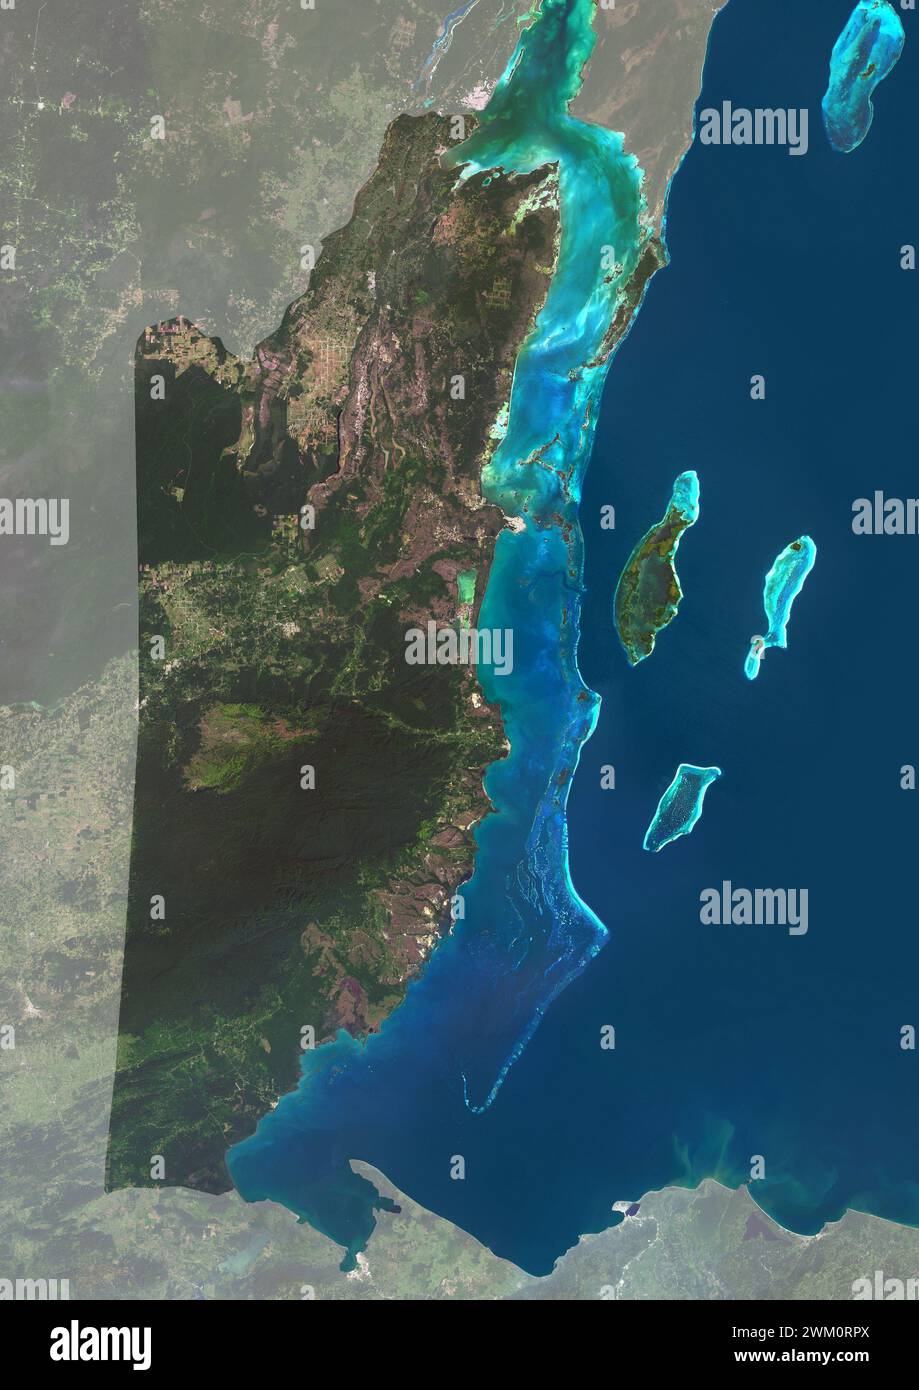 Immagine satellitare a colori del Belize, con maschera. La Barriera Corallina del Belize corre per circa 190 miglia (300 km) lungo la costa caraibica del Belize. Foto Stock